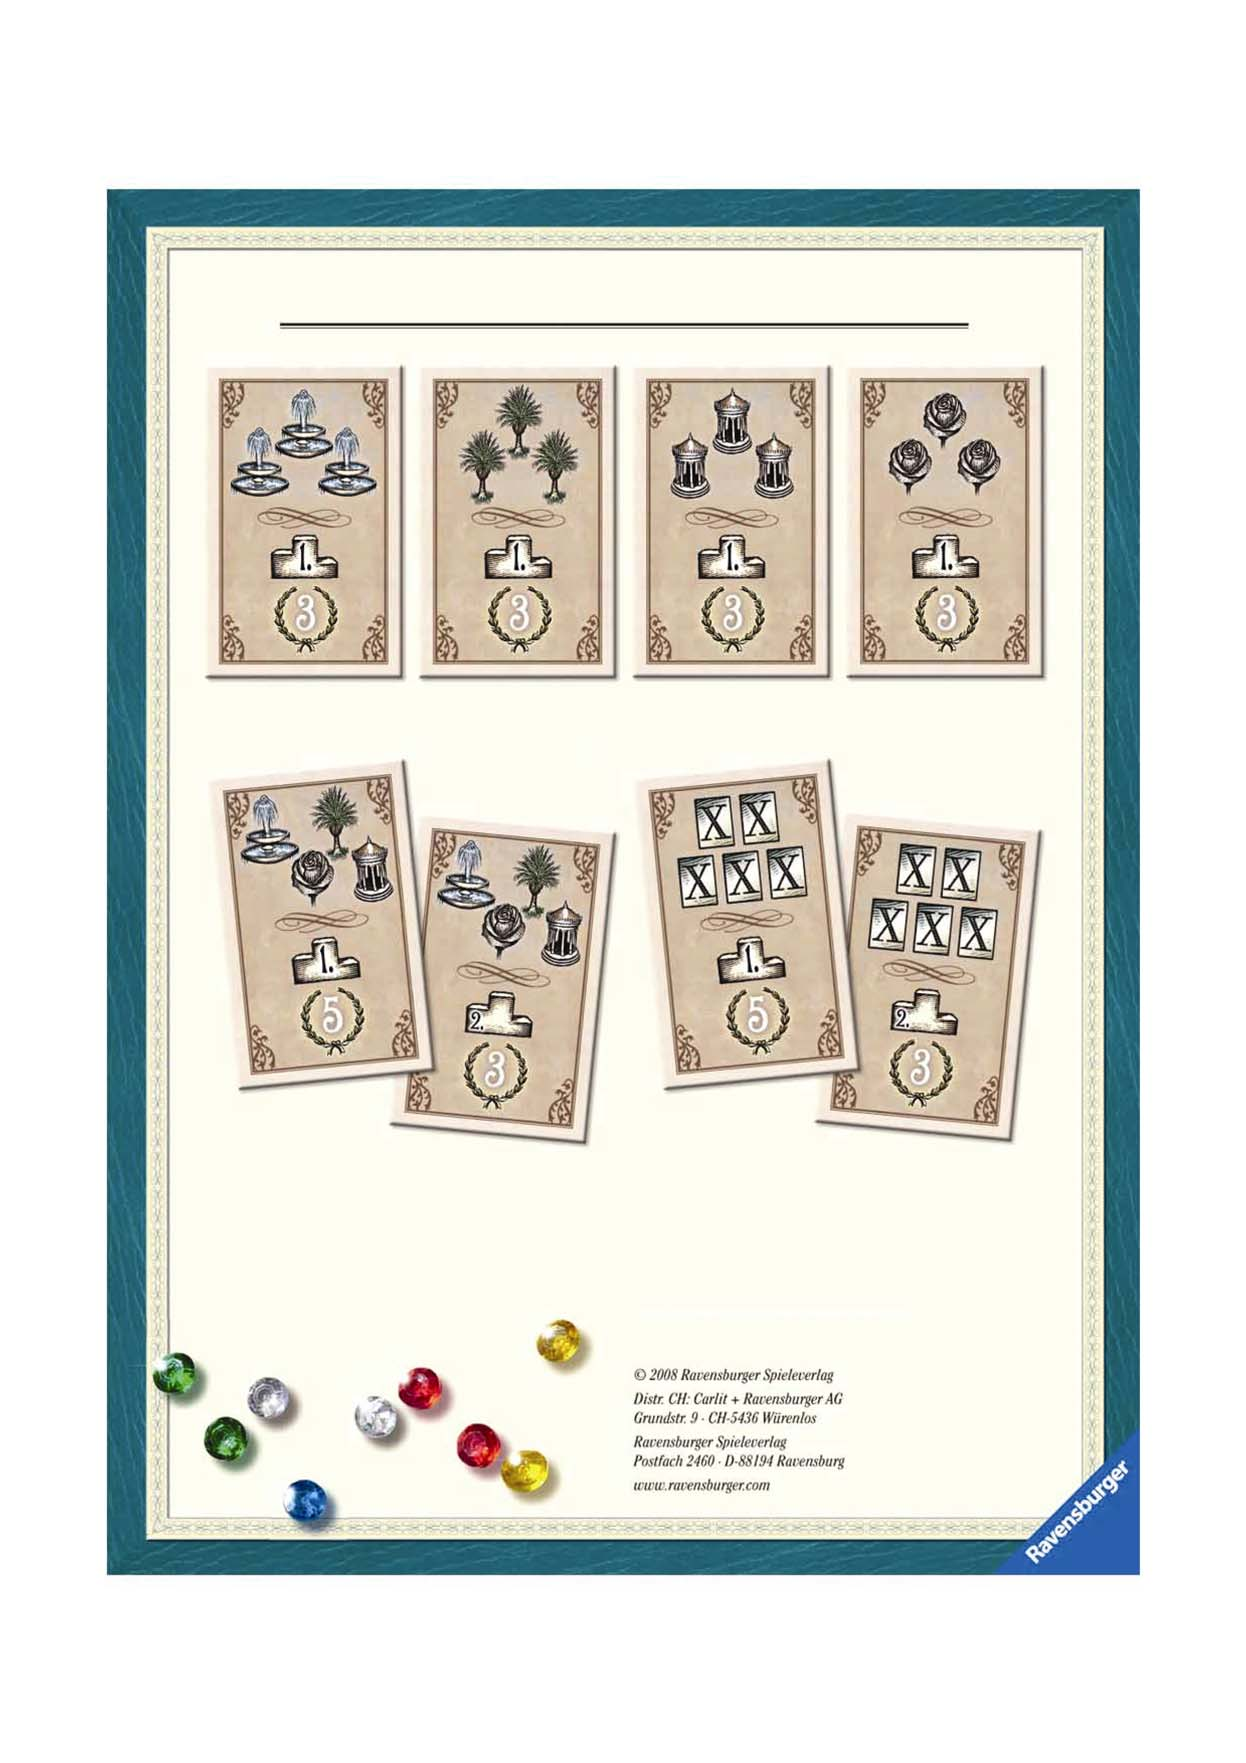 A bónuszkártyák összefoglalója Az első játékos, aki leépít 3 szökőkutat, 3 üvegházat, 3 pavilont vagy 3 rózsakertet, azonnal megkapja a hozzá tartozó bónuszkártyát, ami a játék végén 3 GYP-t jelent